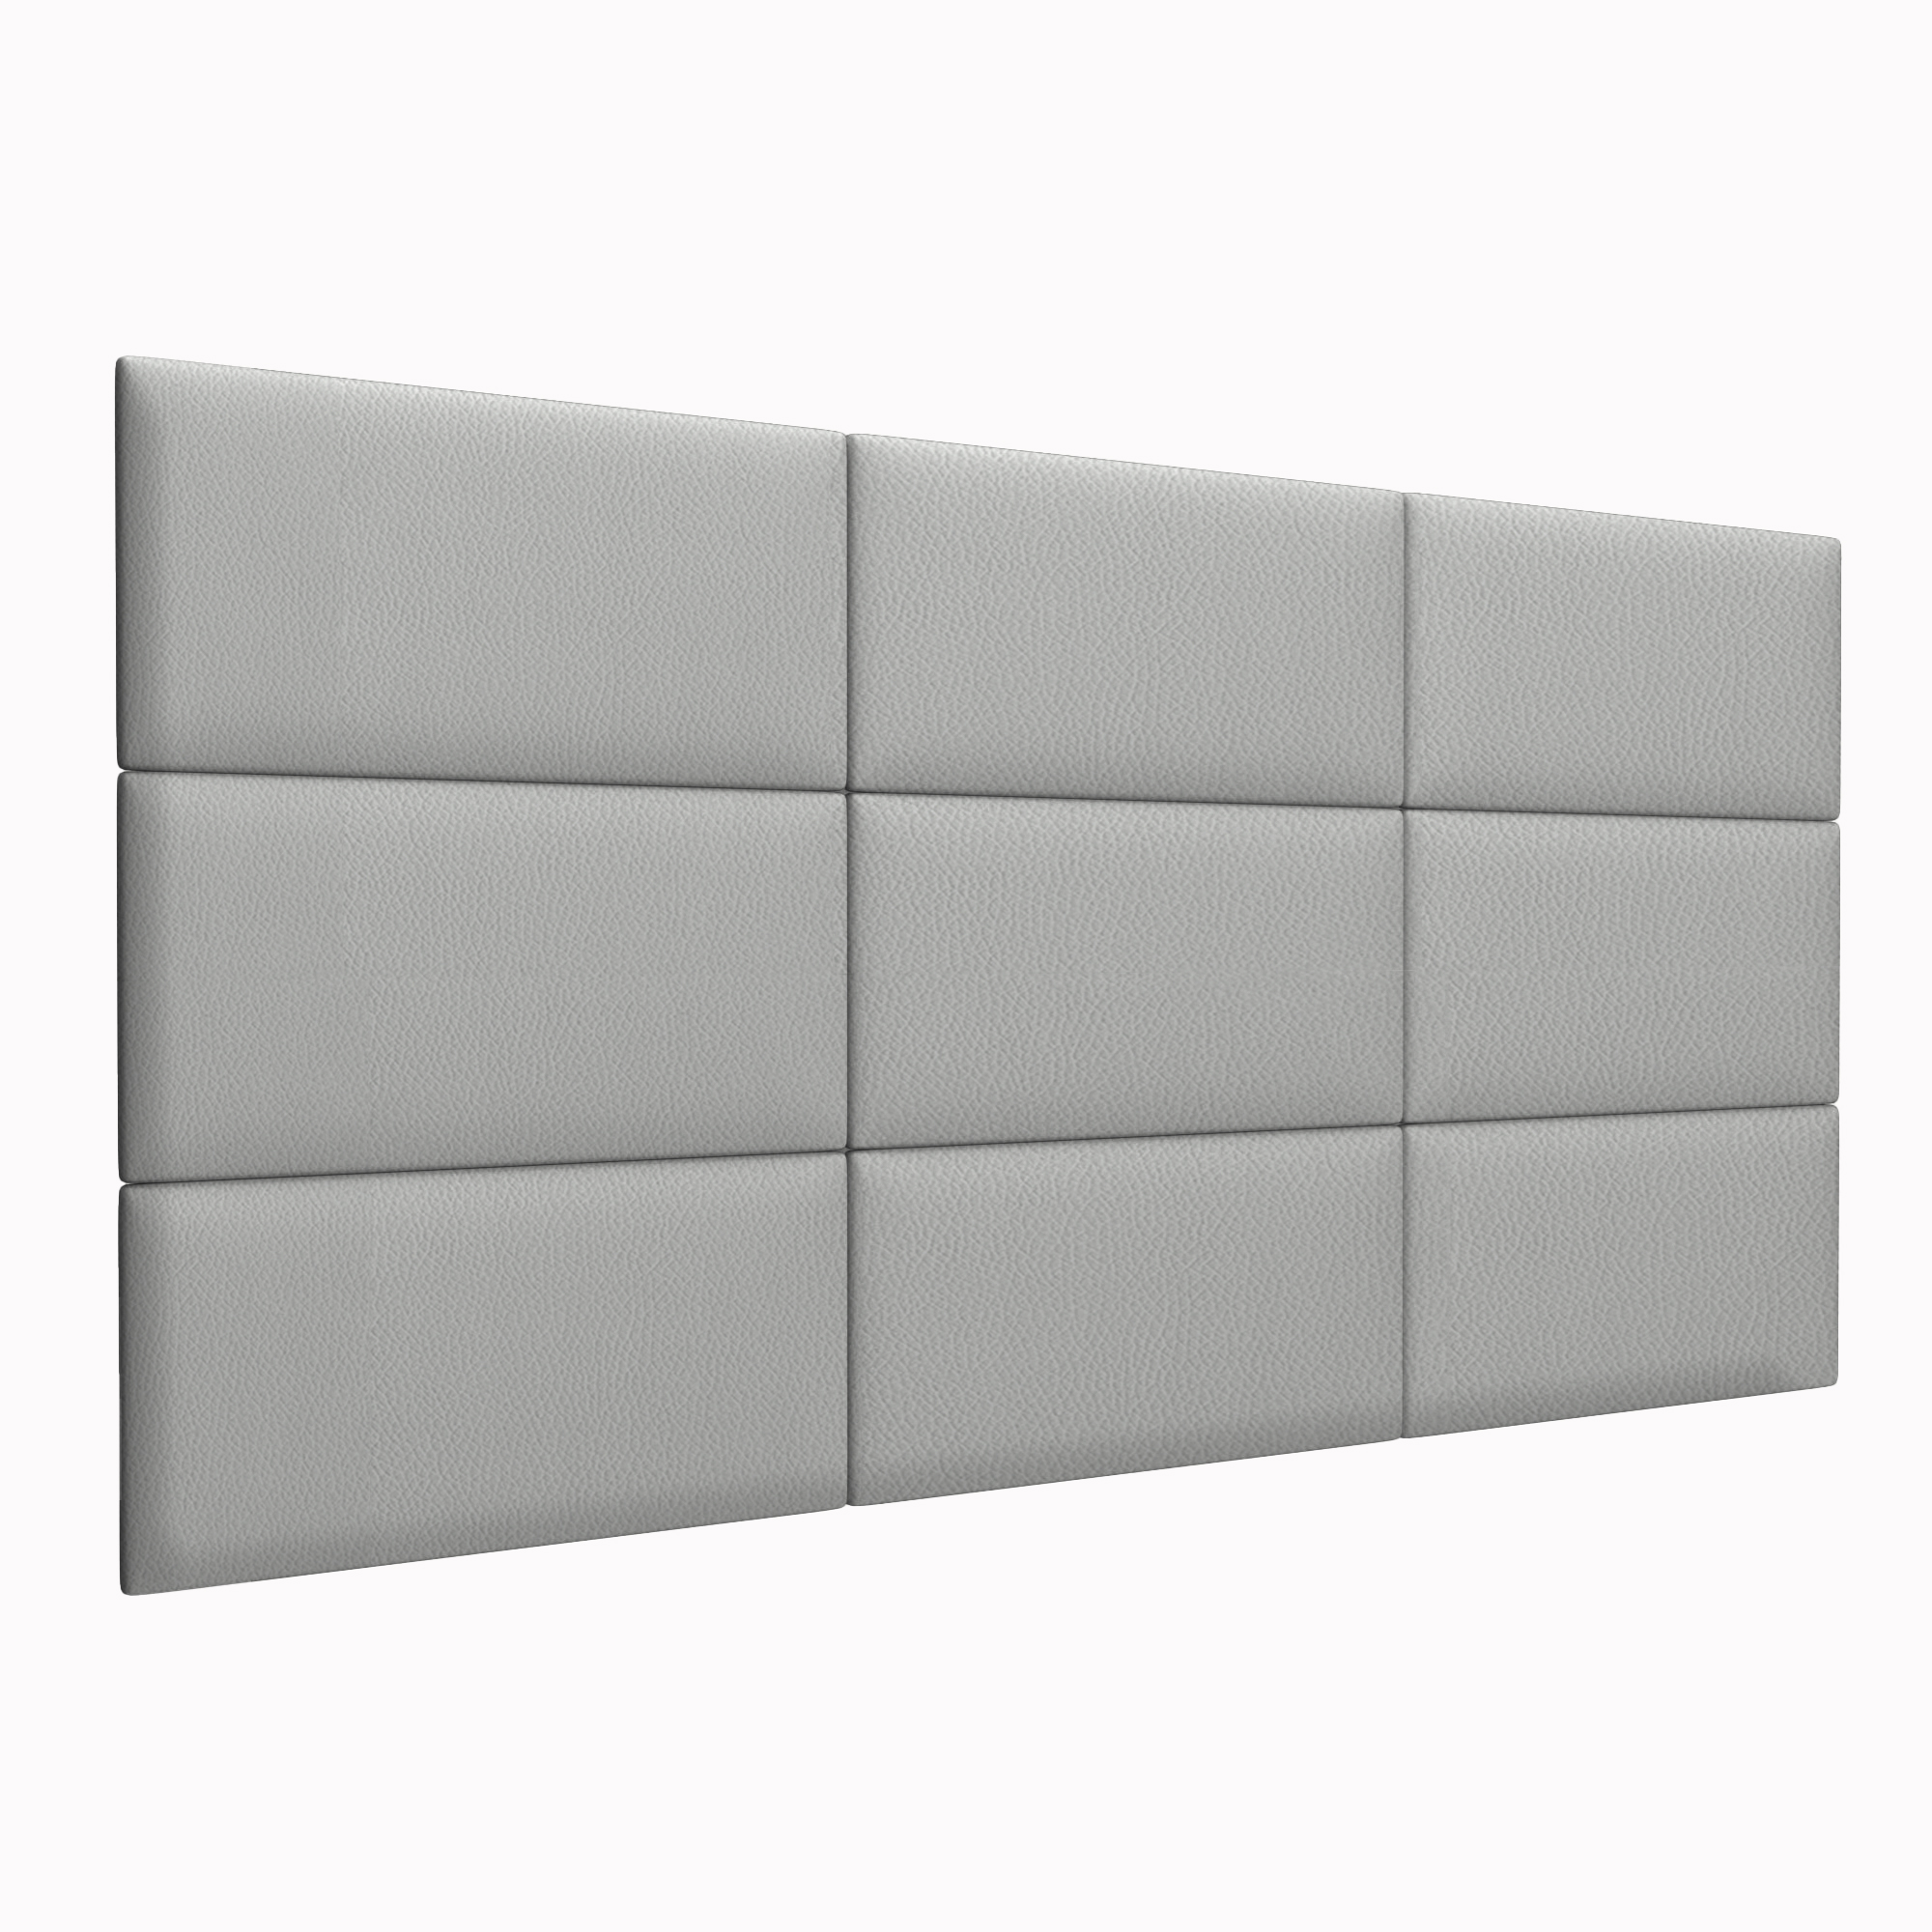 Шумо звукоизоляционные мягкие панели Eco Leather Grey 30х60 см 1 шт.